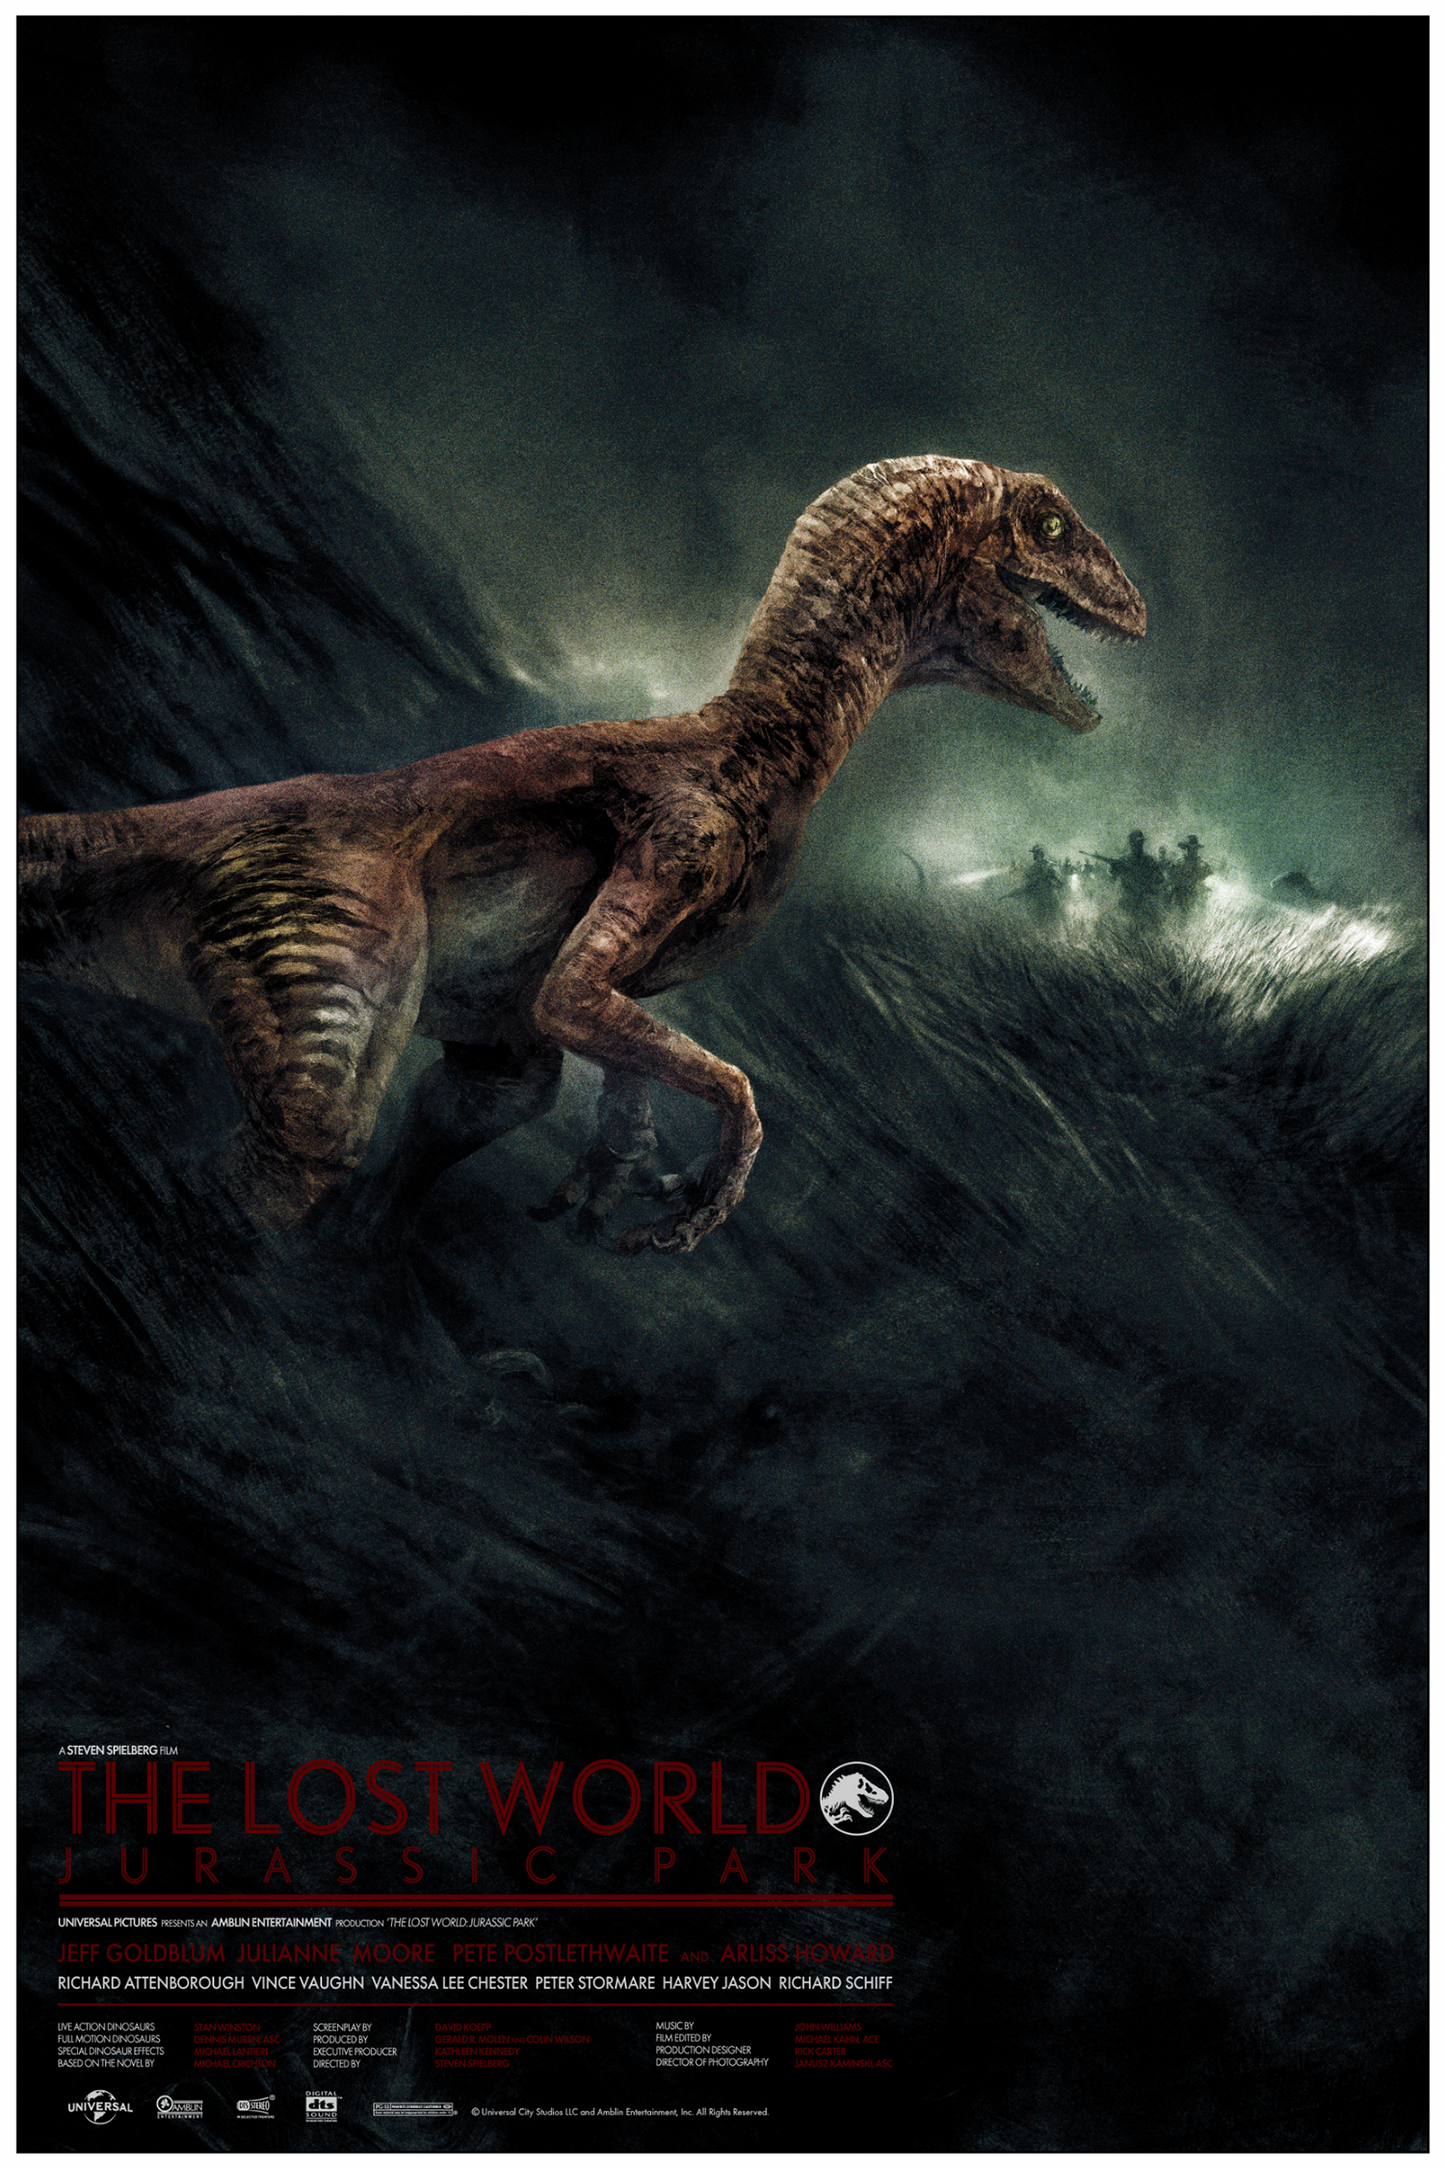 Karl Fitzgerald "The Lost World: Jurassic Park"